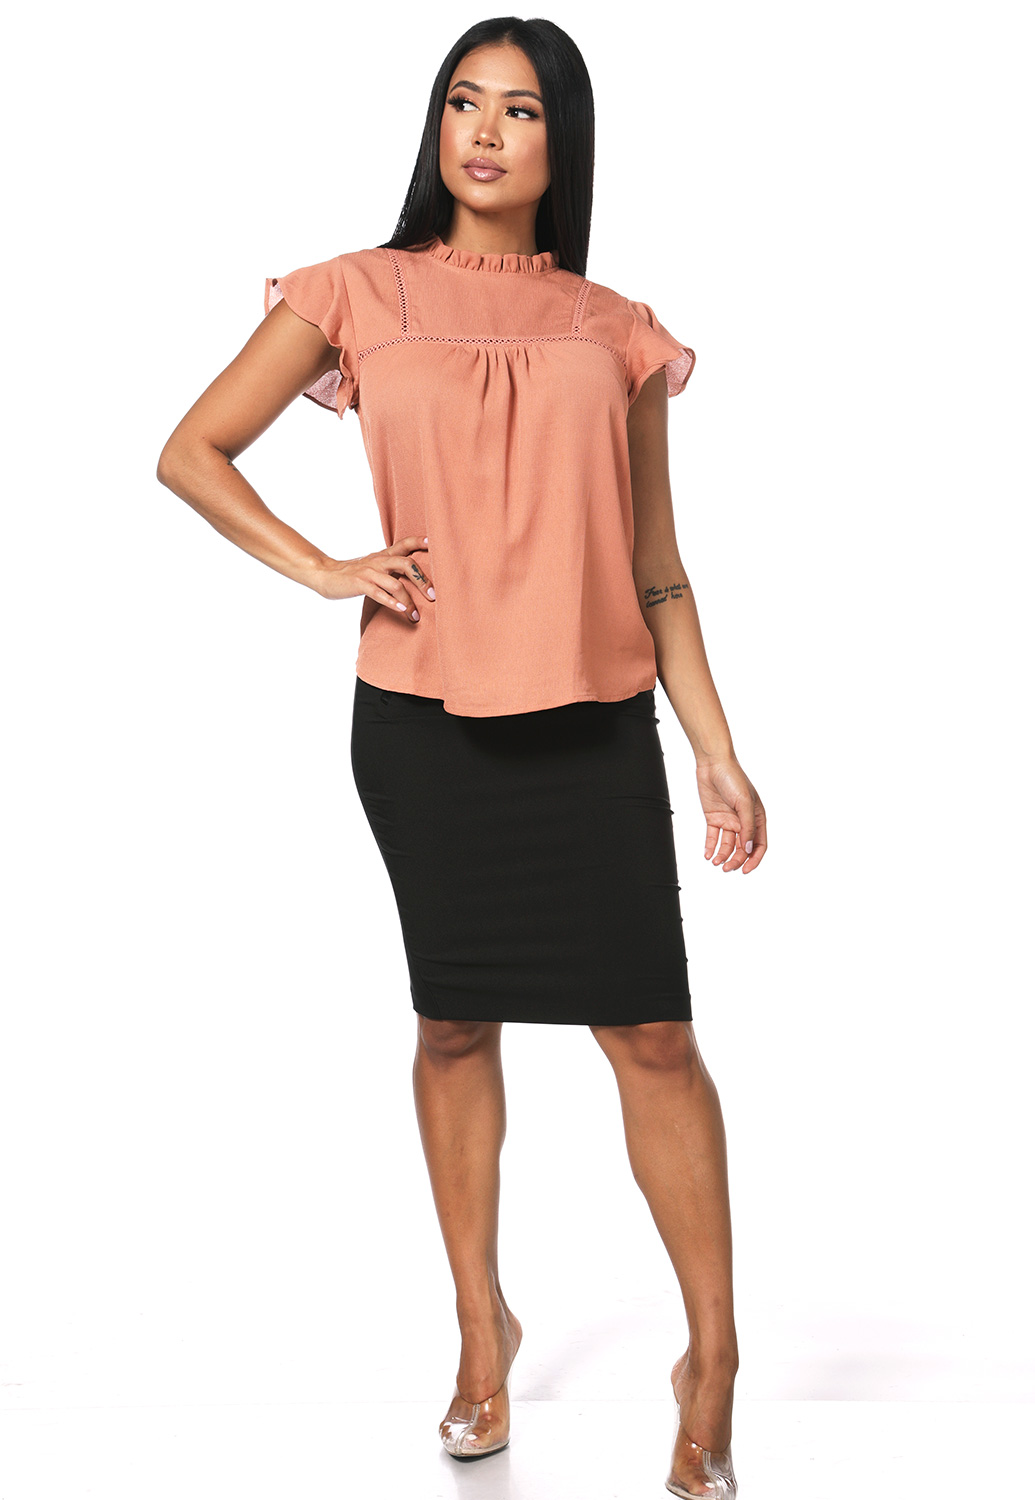 Ruffle Detail Dressy Top | Shop Blouses & Shirts at Papaya Clothing